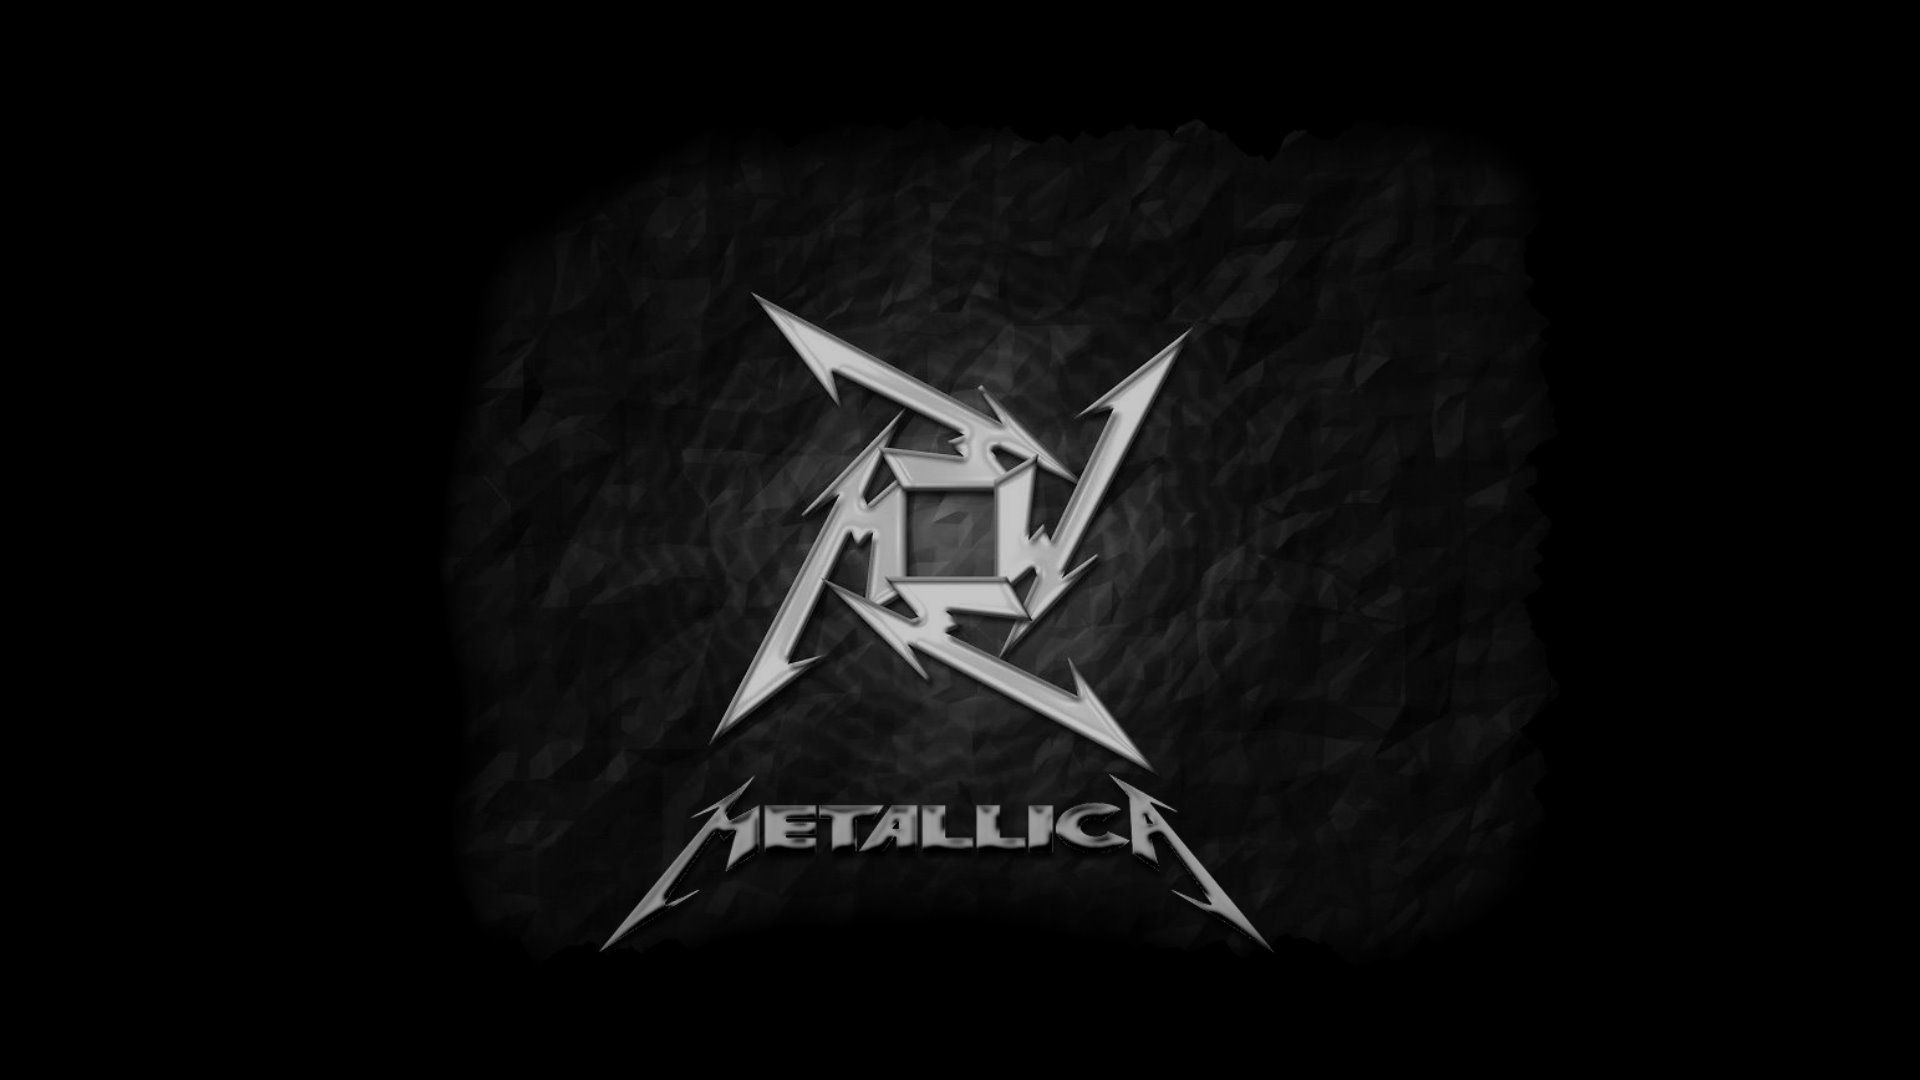 Metallica Wallpaper Widescreen HD 1080p Widescreen With Photos Of ..